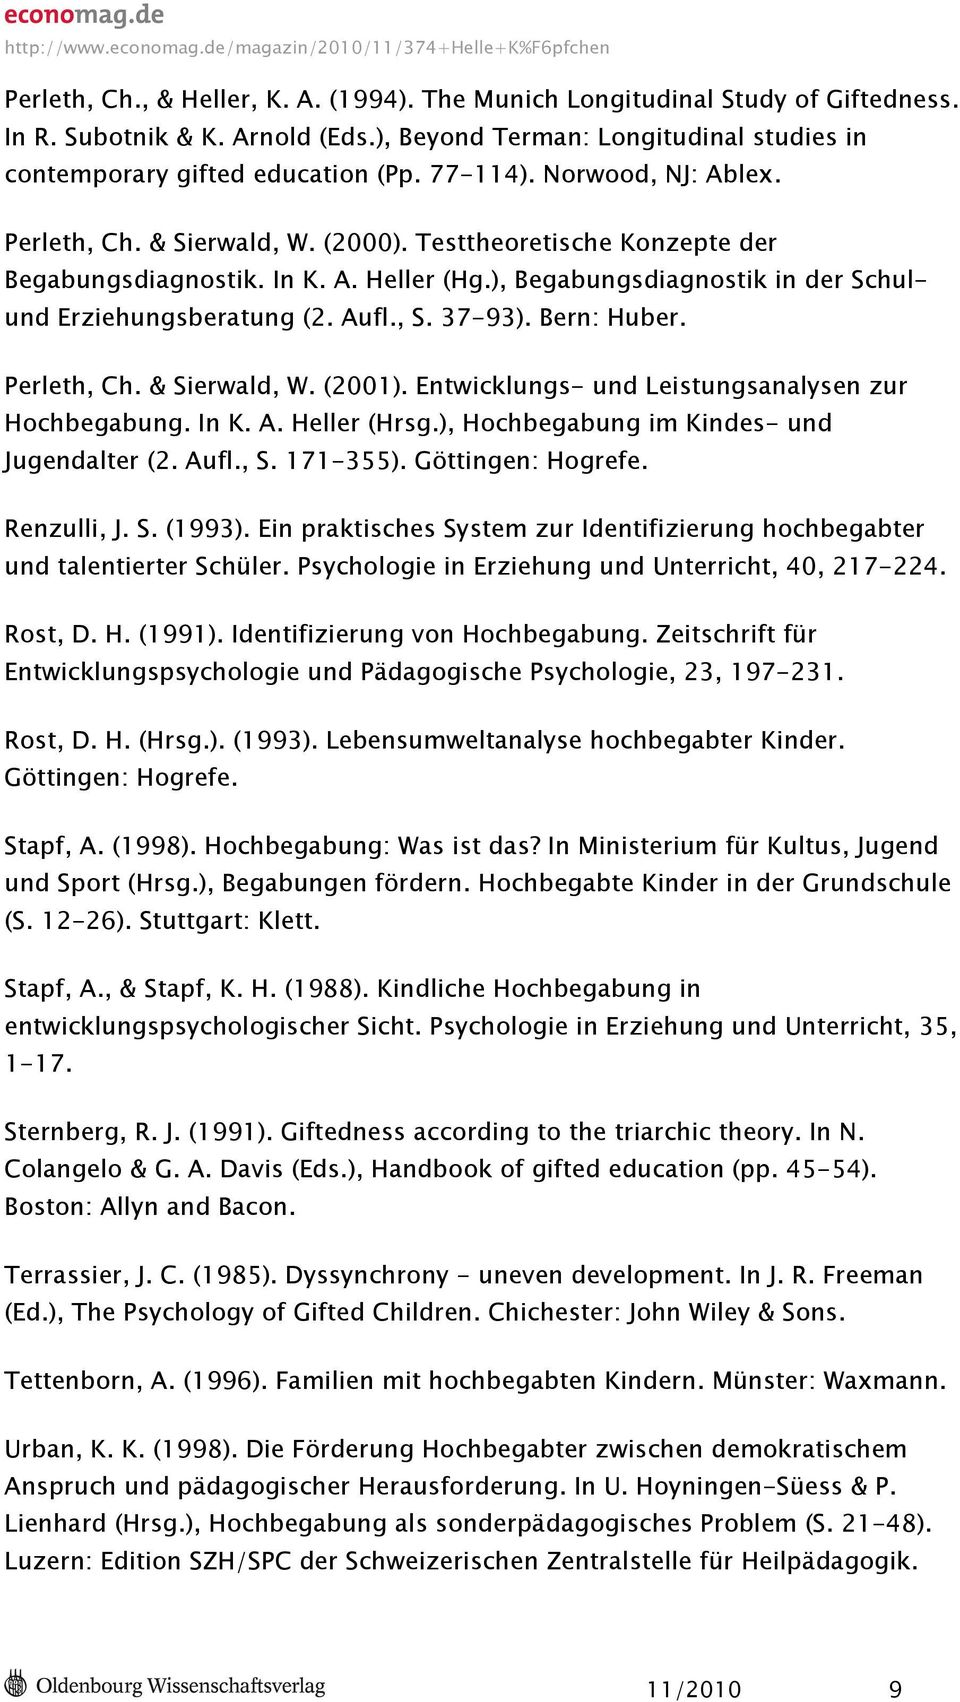 37-93). Bern: Huber. Perleth, Ch. & Sierwald, W. (2001). Entwicklungs- und Leistungsanalysen zur Hochbegabung. In K. A. Heller (Hrsg.), Hochbegabung im Kindes- und Jugendalter (2. Aufl., S. 171-355).